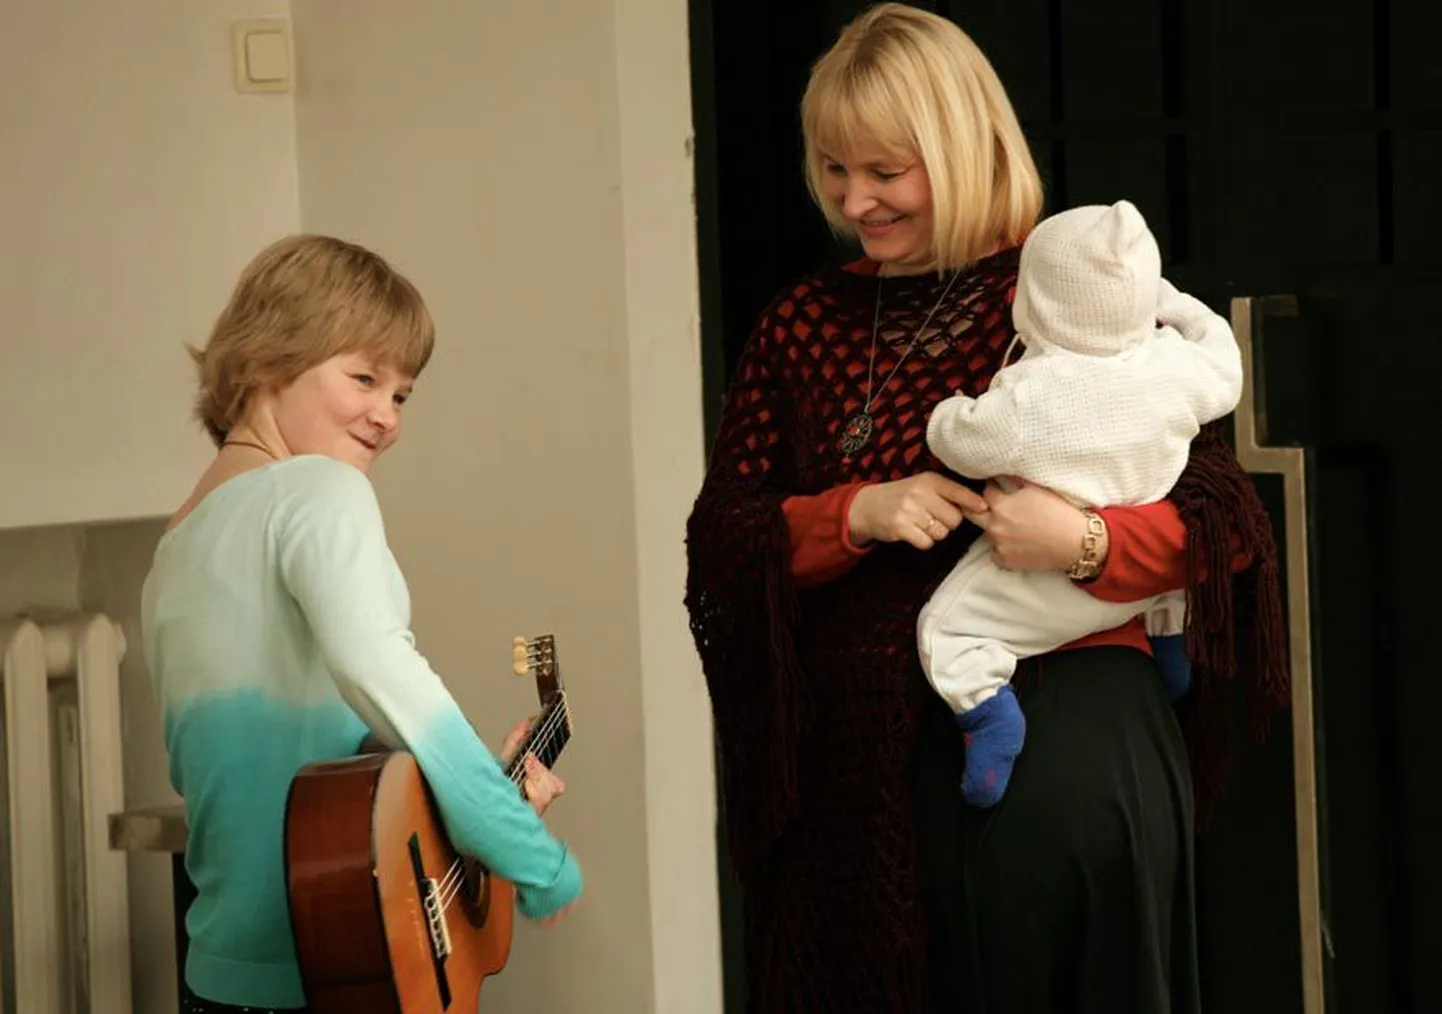 Järvalastest pälvis noorte omaloominguliste laulude võistlusel «Südamelaul 2012» eripreemia imaverelane Haldi Välimäe, kellele oli kaasa tulnud elama ema Lili Välimäe ja vend Jaan Sander.